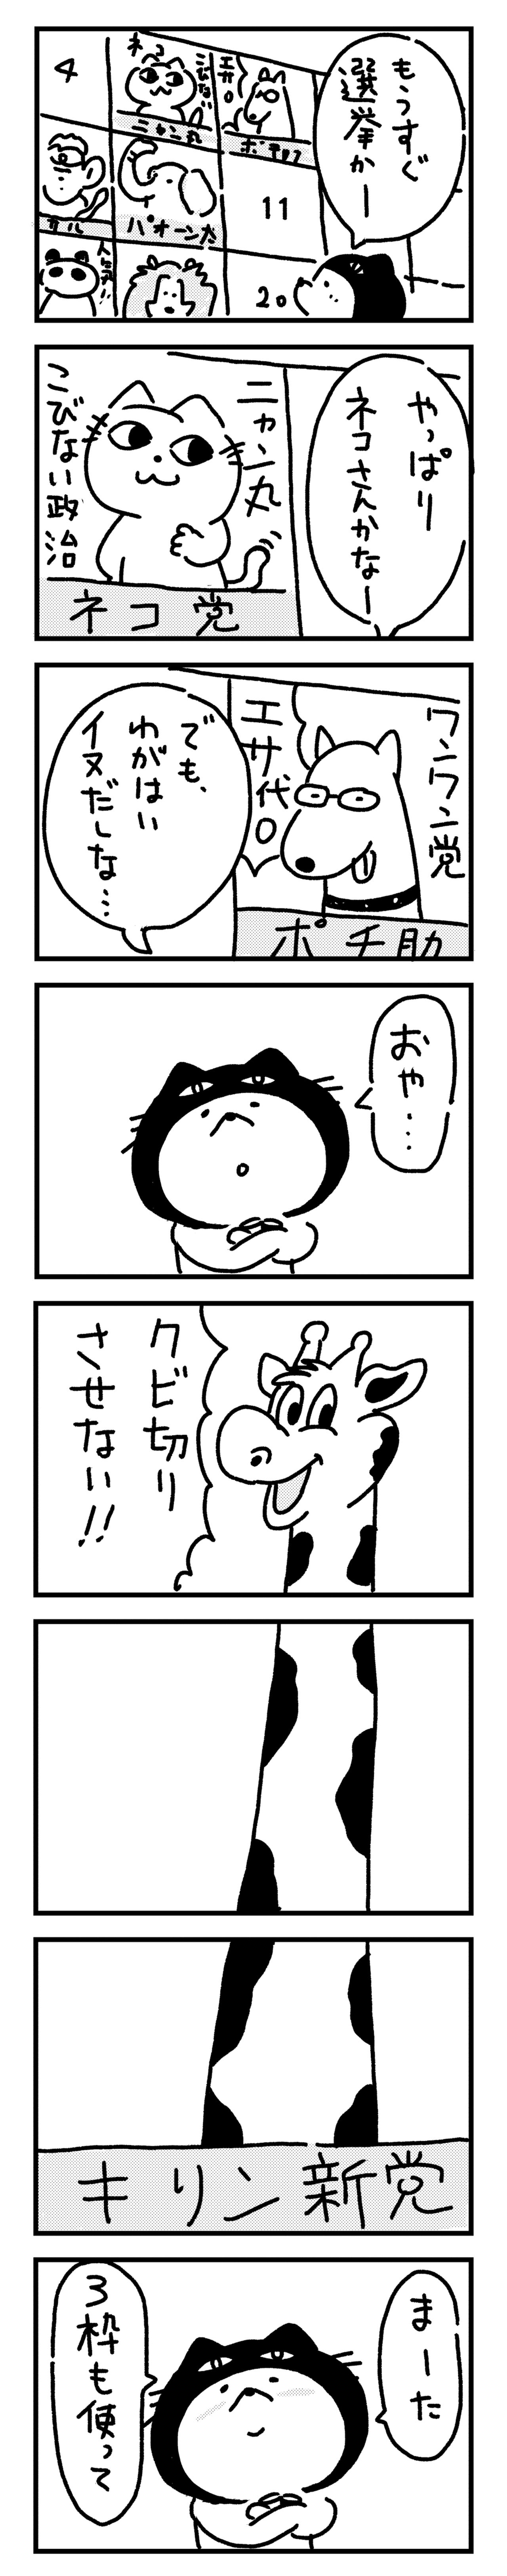 くぶねこ漫画_選挙_3note